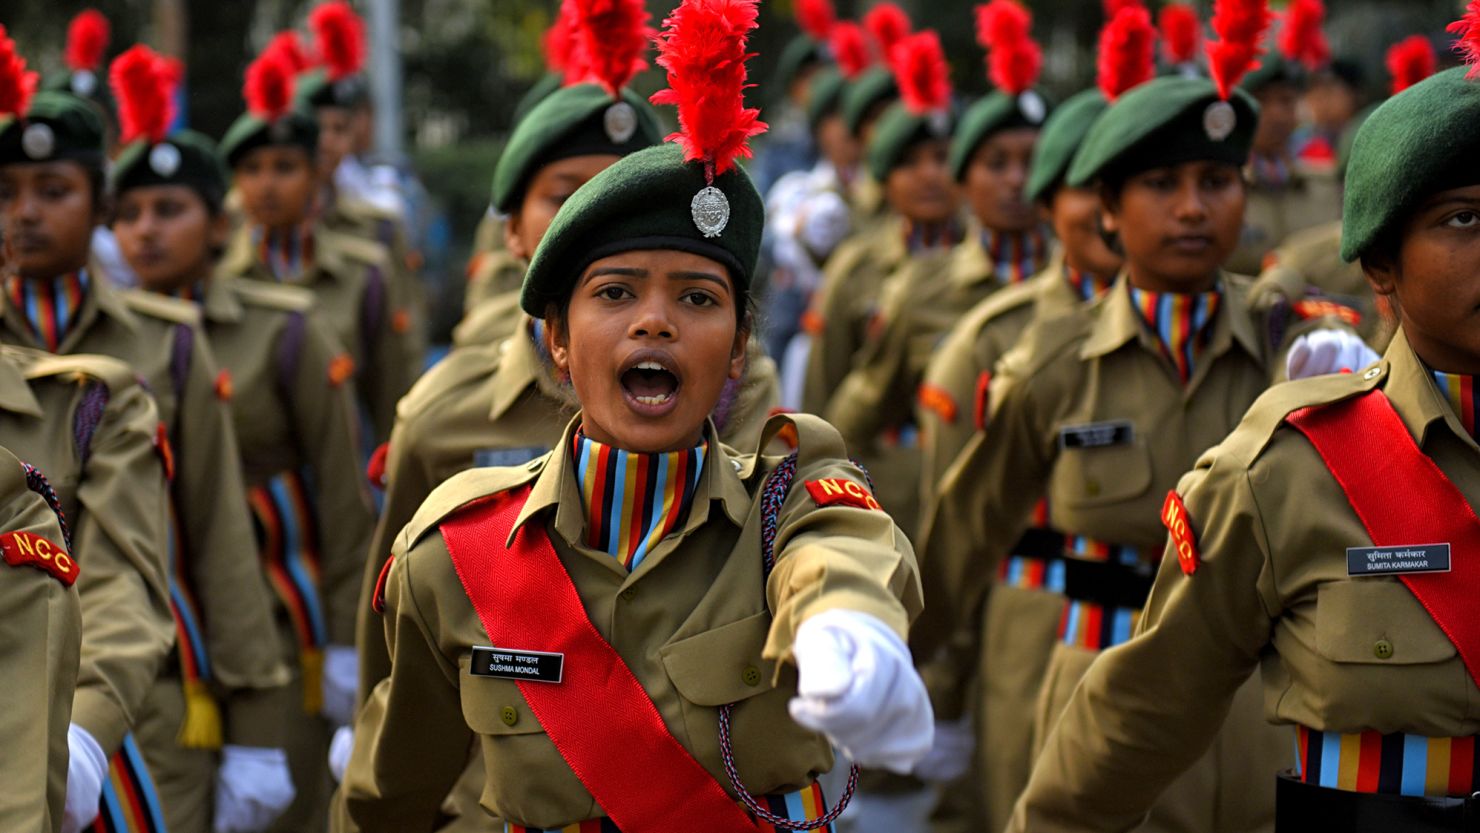 1480px x 833px - Indian Army Girls Xxx Streaming Porn Videos | Youjizz.sex